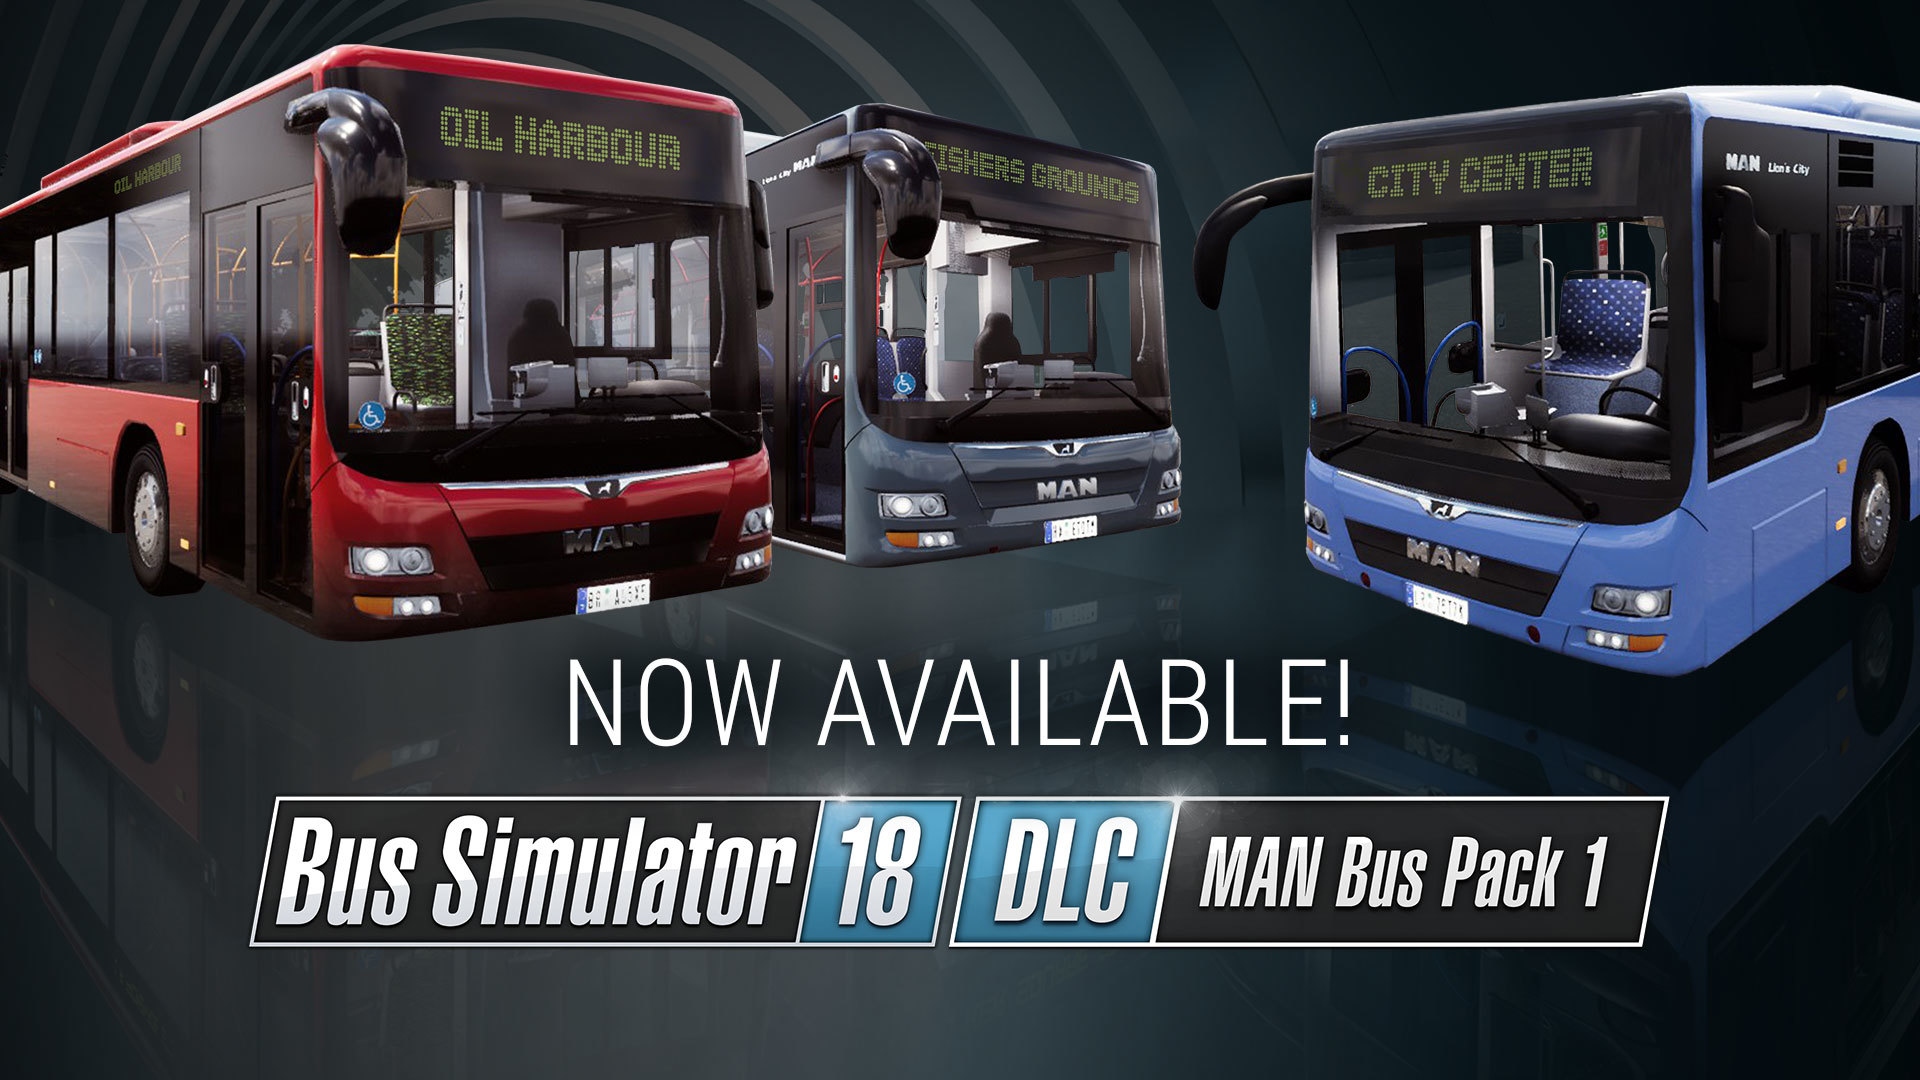 bus simulator 18 download